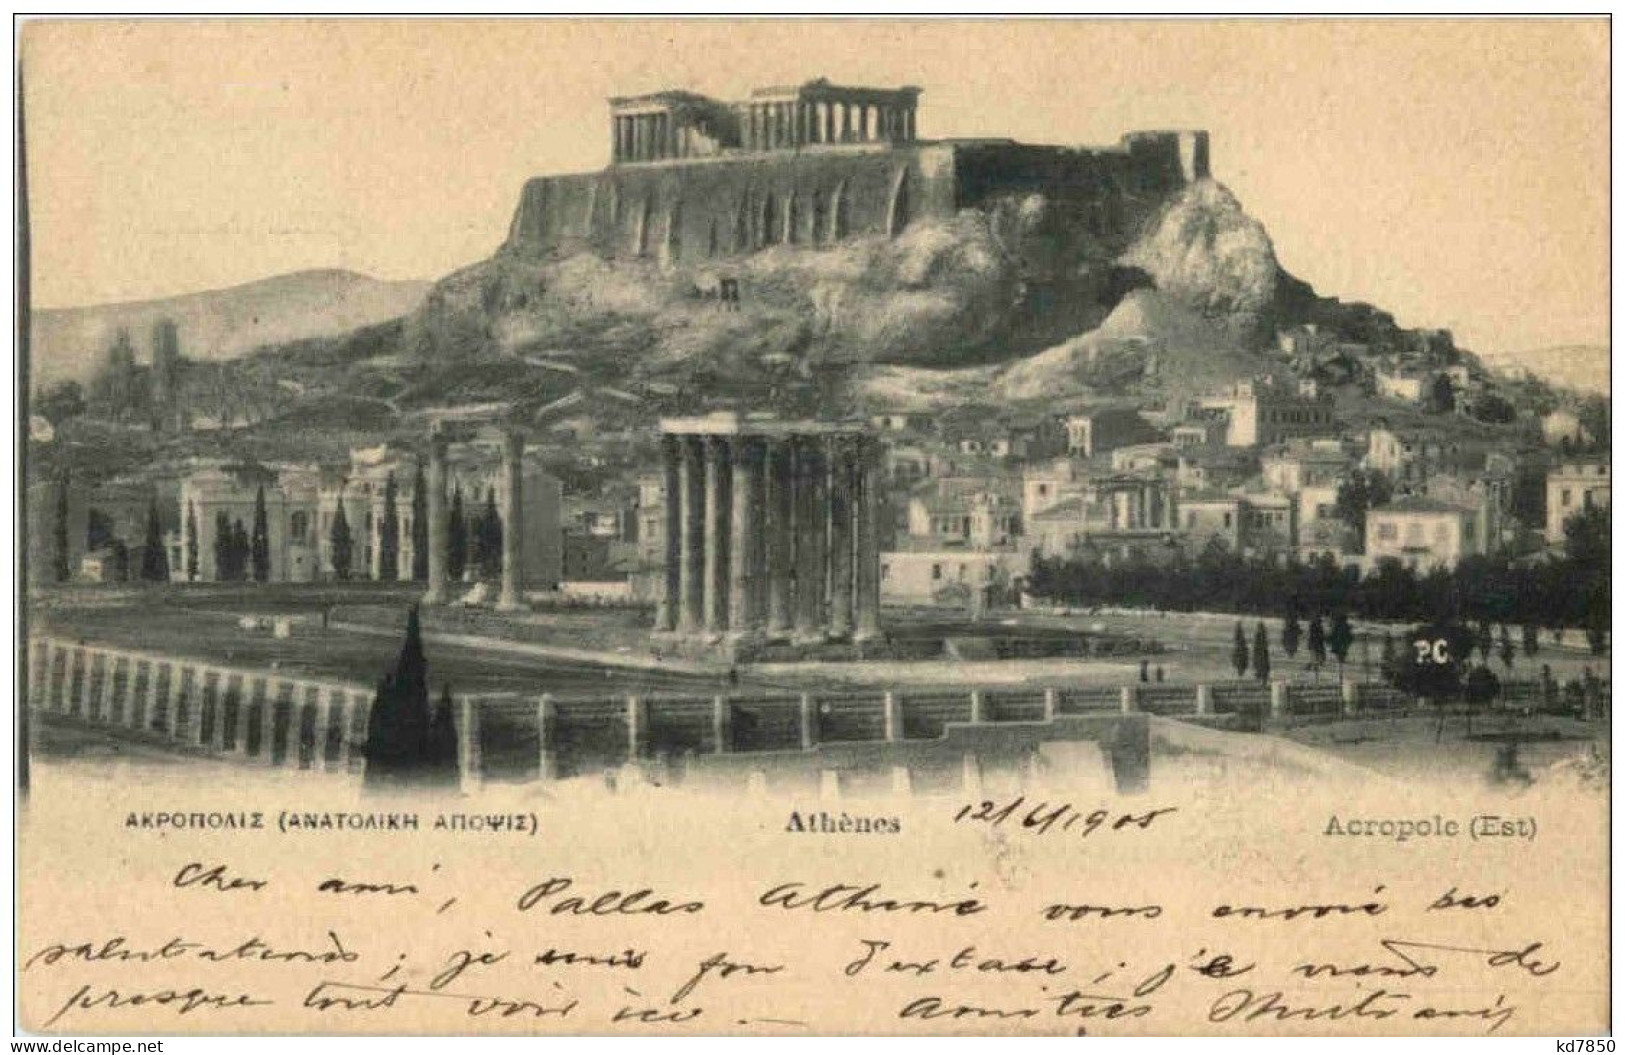 Athenes - Acropolis - Griechenland